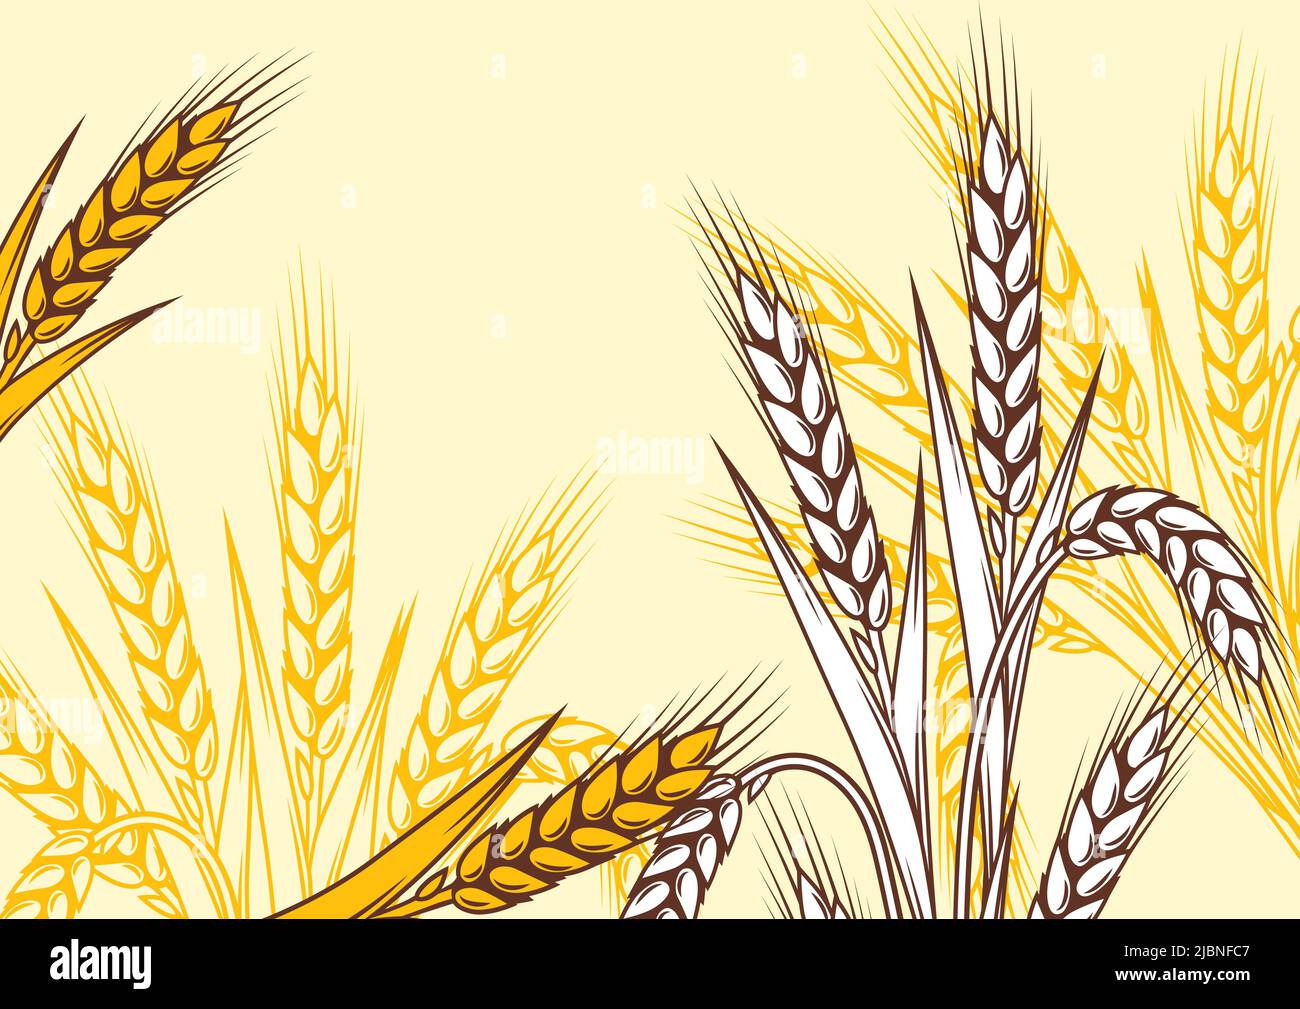 Hintergrund mit Weizen. Landwirtschaftliches Bild mit natürlichen goldenen Ohren von Gerste oder Roggen. Stock Vektor